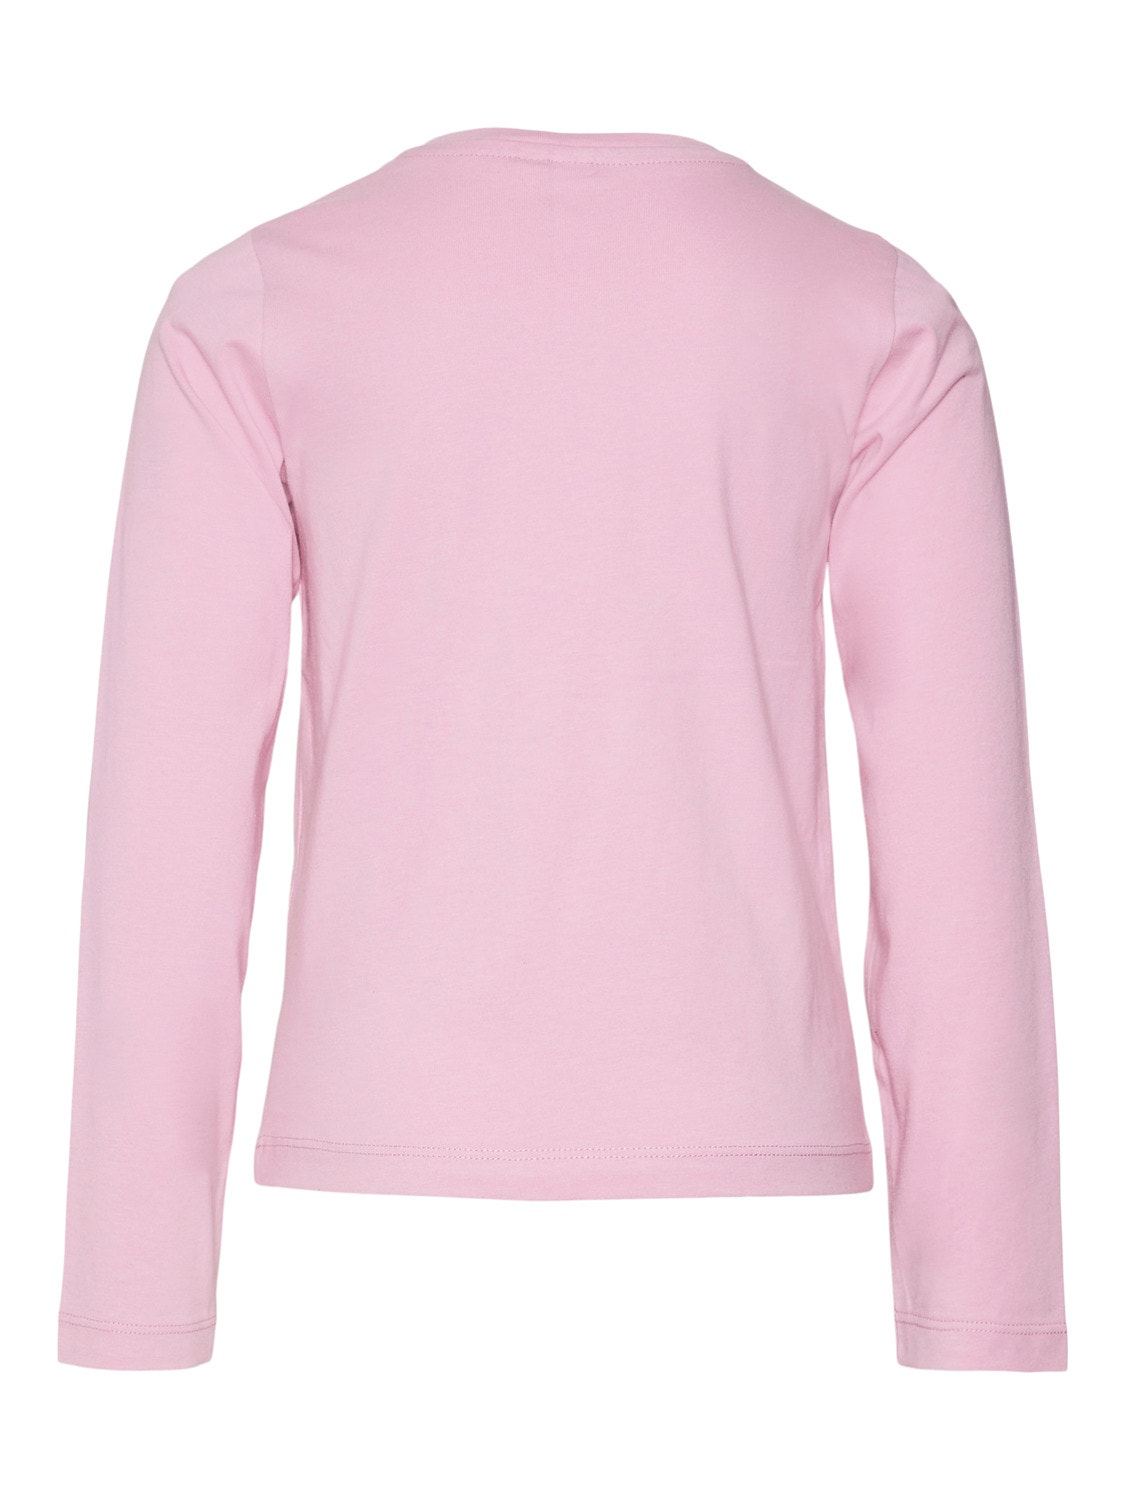 Vero Moda VMATHLETICFRANCIS T-shirt -Pastel Lavender - 10301281